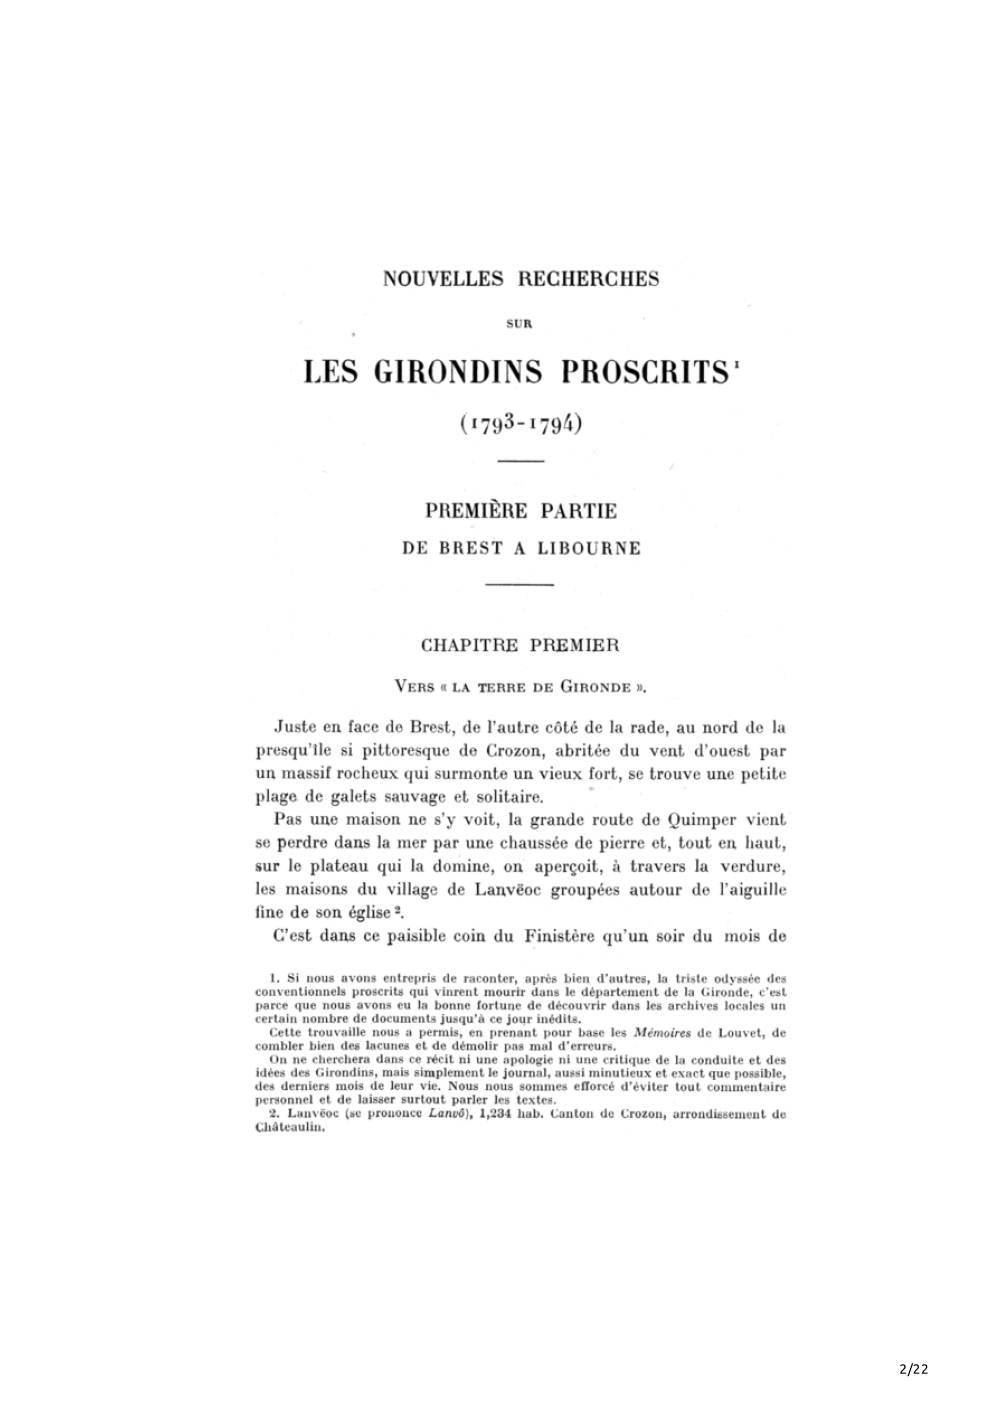 Nouvelles recherches sur les Girondins proscrits 1793 - 1794